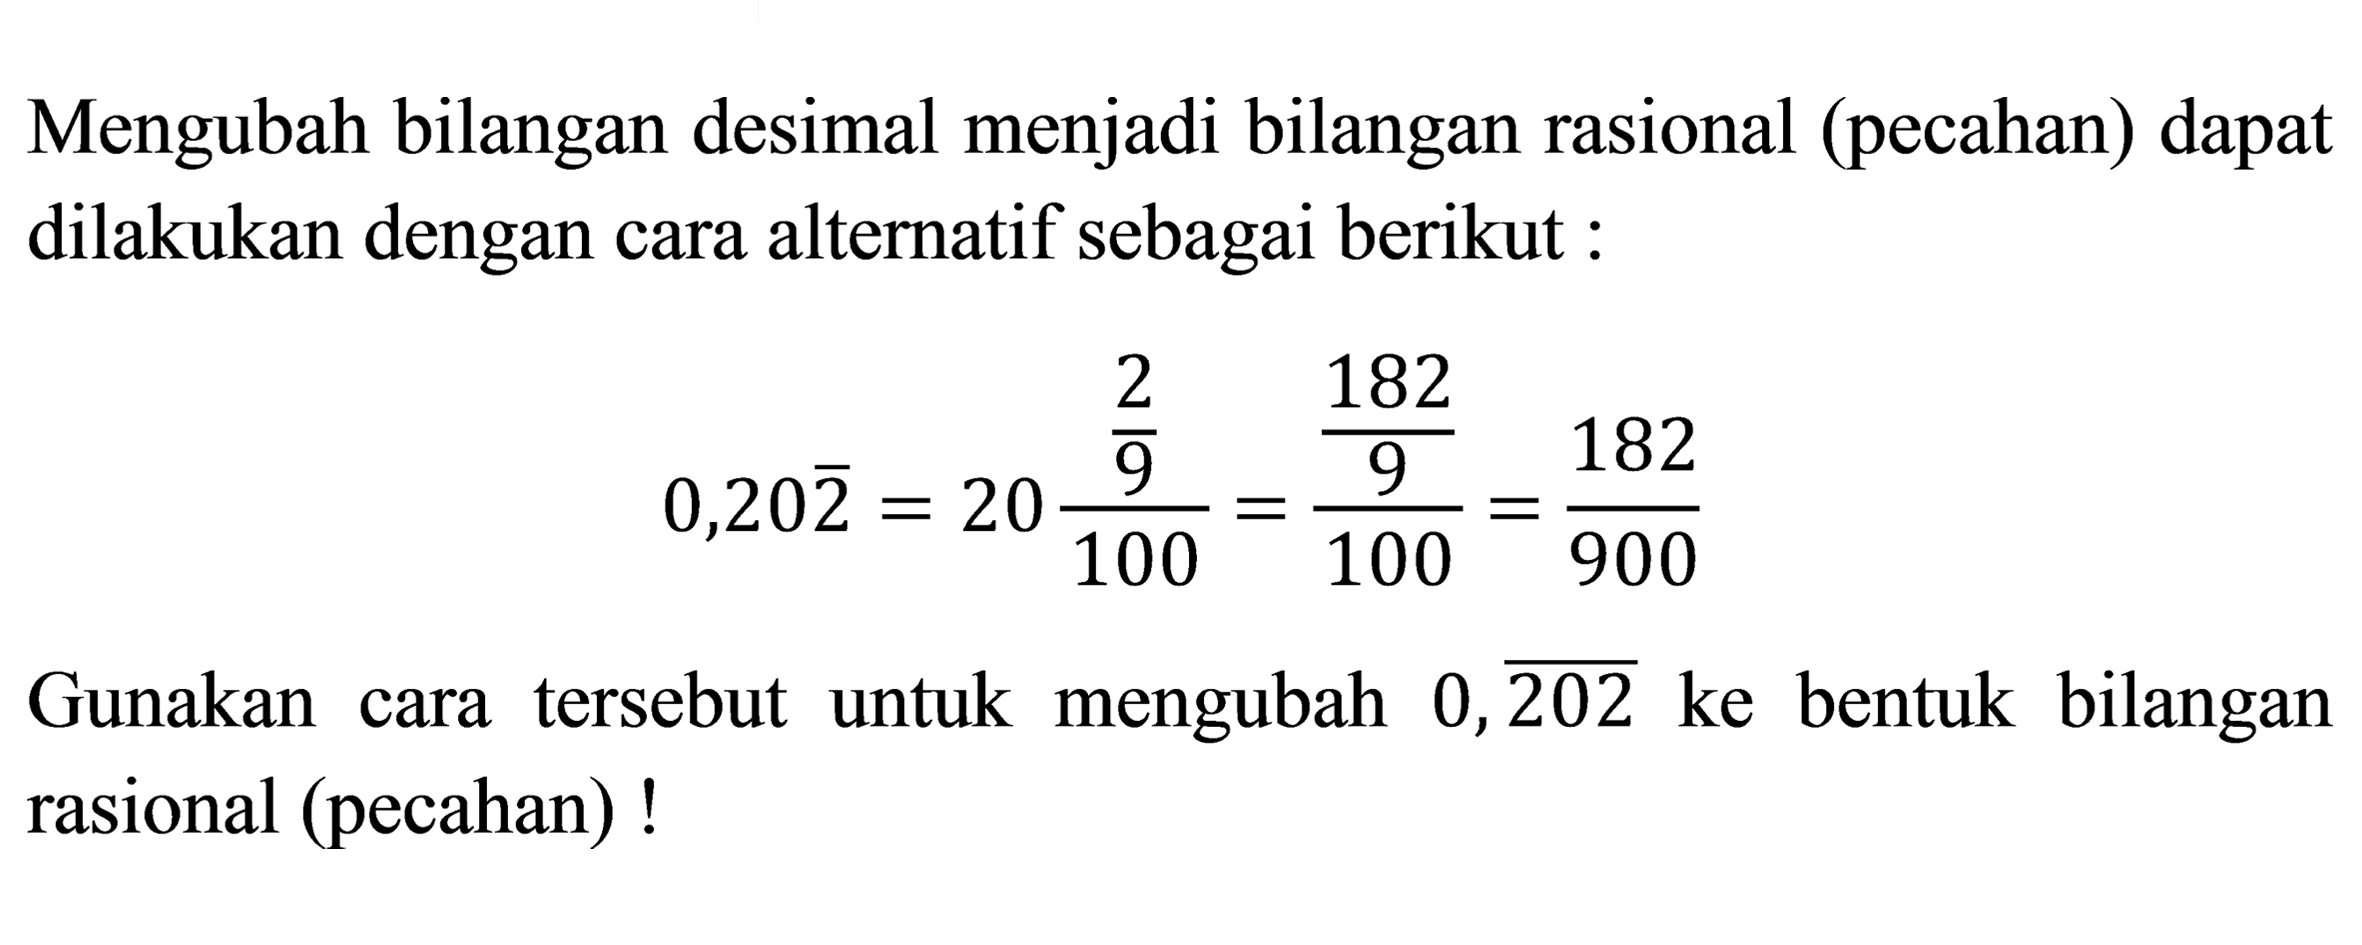 Mengubah bilangan desimal menjadi bilangan rasional (pecahan) dapat dilakukan dengan cara alternatif sebagai berikut :

0,20 {2)=20 ((2)/(9))/(100)=((182)/(9))/(100)=(182)/(900)

Gunakan cara tersebut untuk mengubah  0, {202)  ke bentuk bilangan rasional (pecahan)!